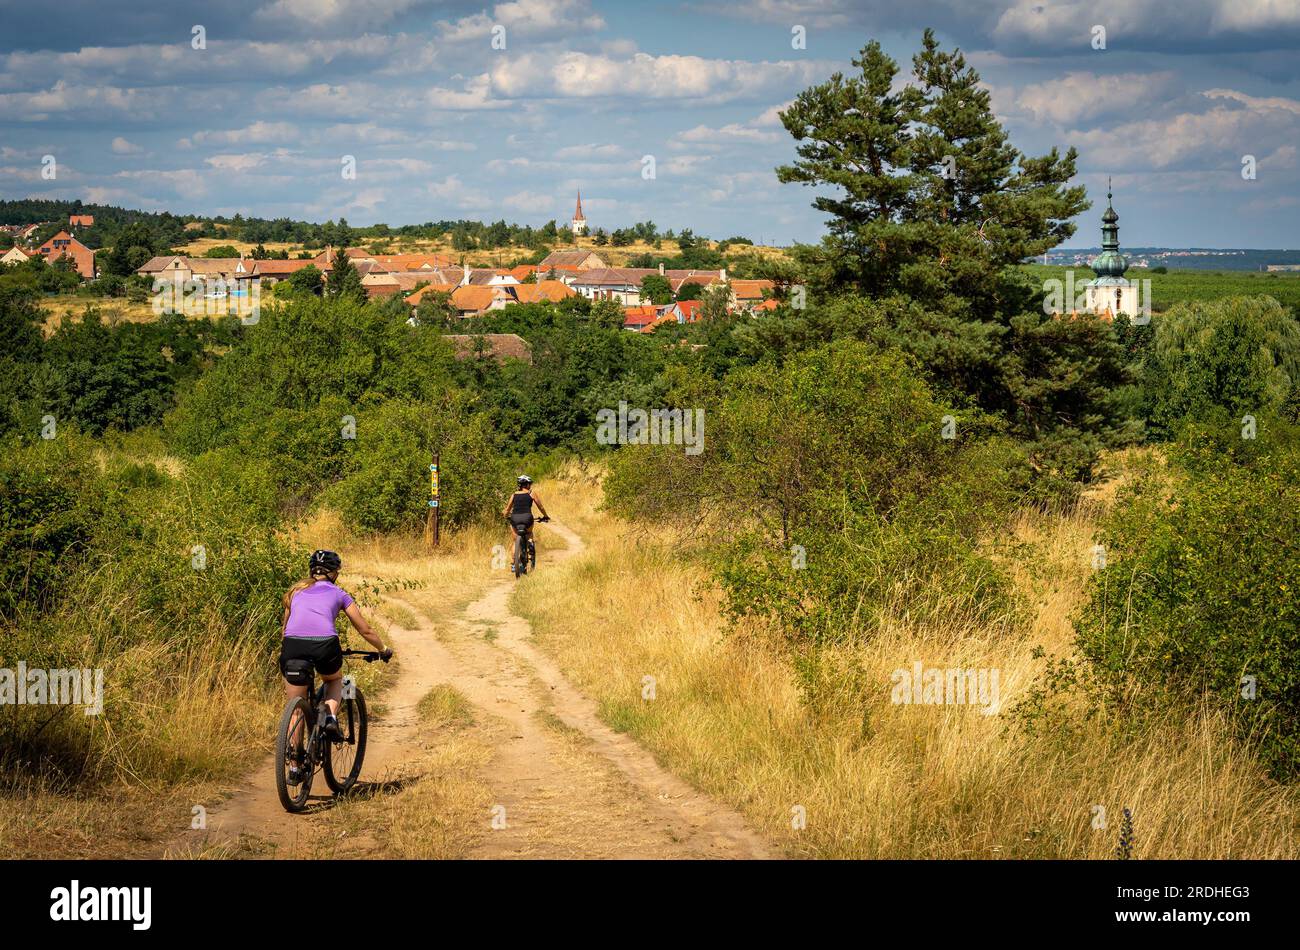 Cyclisme dans la région de moravie du sud de la République tchèque. Beau paysage rural autour de Znojmo avec des vignes et de nombreux sentiers de randonnée et VTT Banque D'Images